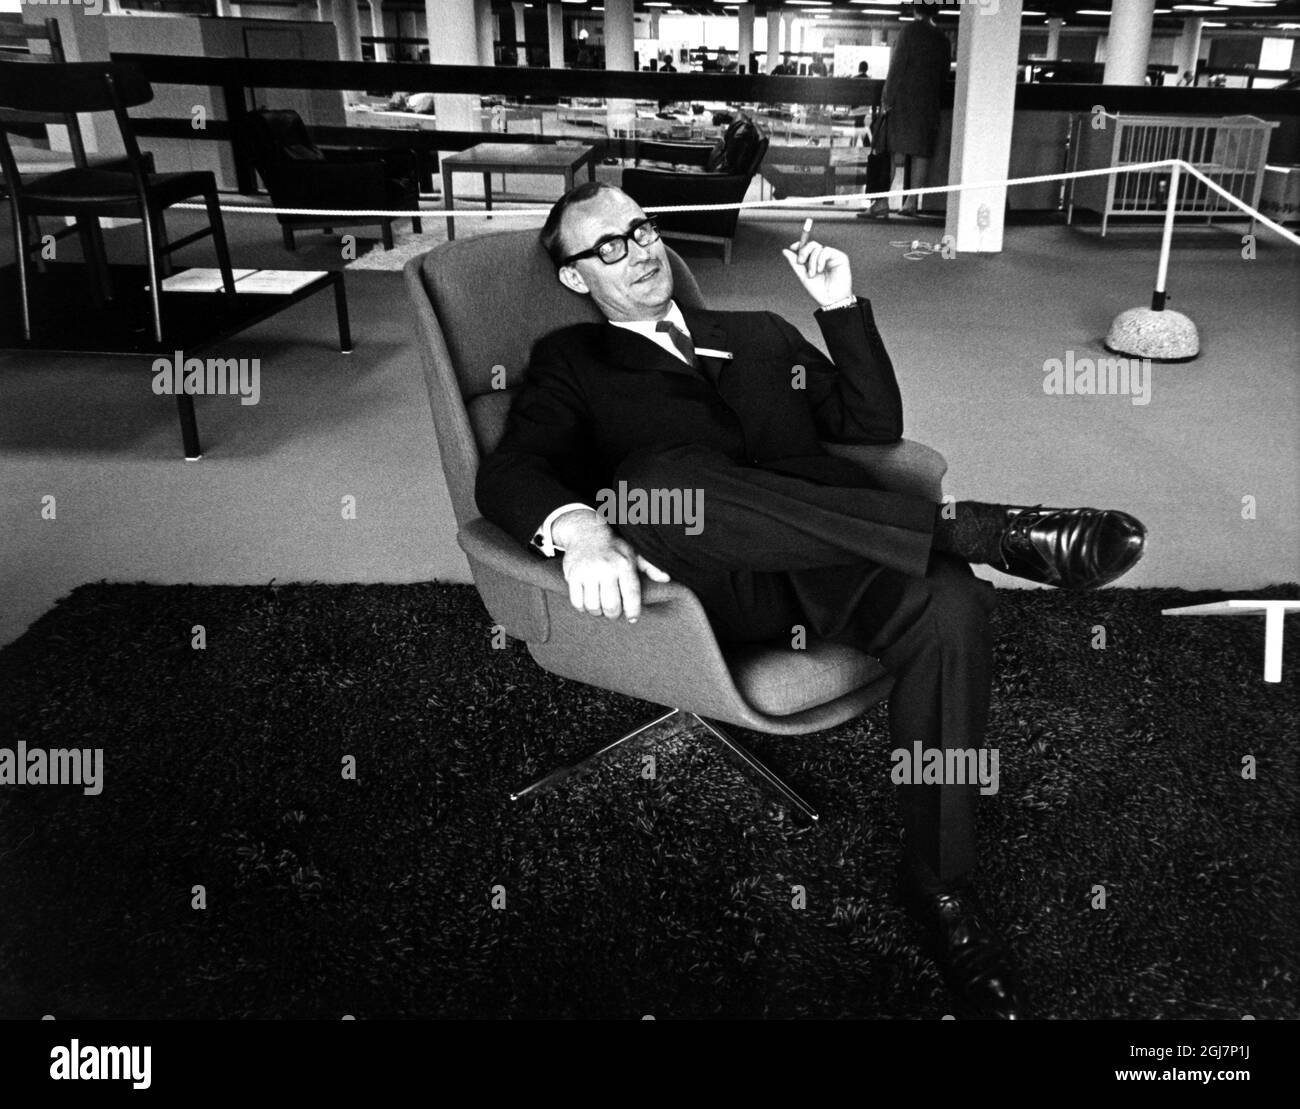 STOCCOLMA GIUGNO 1965 Ingvar Kamprad, fondatore e manager di IKEA, seduto su una poltrona per fumare un sigaretto prima dell'apertura del nuovo negozio di mobili IKEA a Skarholmen a sud di Stoccolma. Foto:Jacob Forsell / Expressen / TT / codice 14 Foto Stock